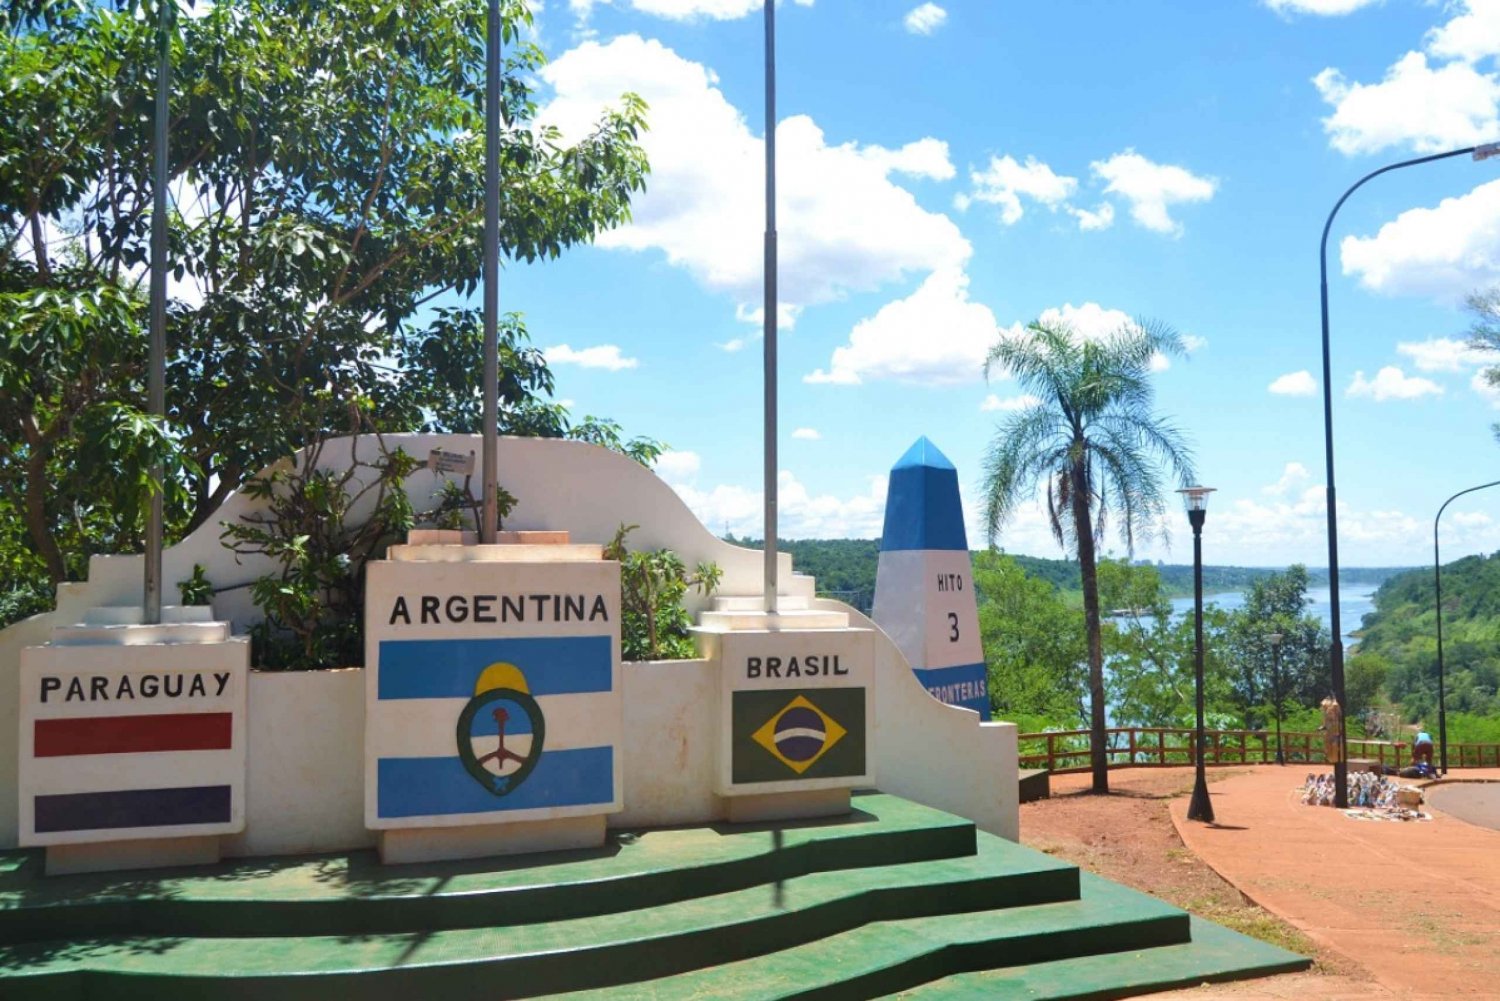 Puerto Iguazú: Hito Tres Fronteras y City Tour La Aripuca in Argentina